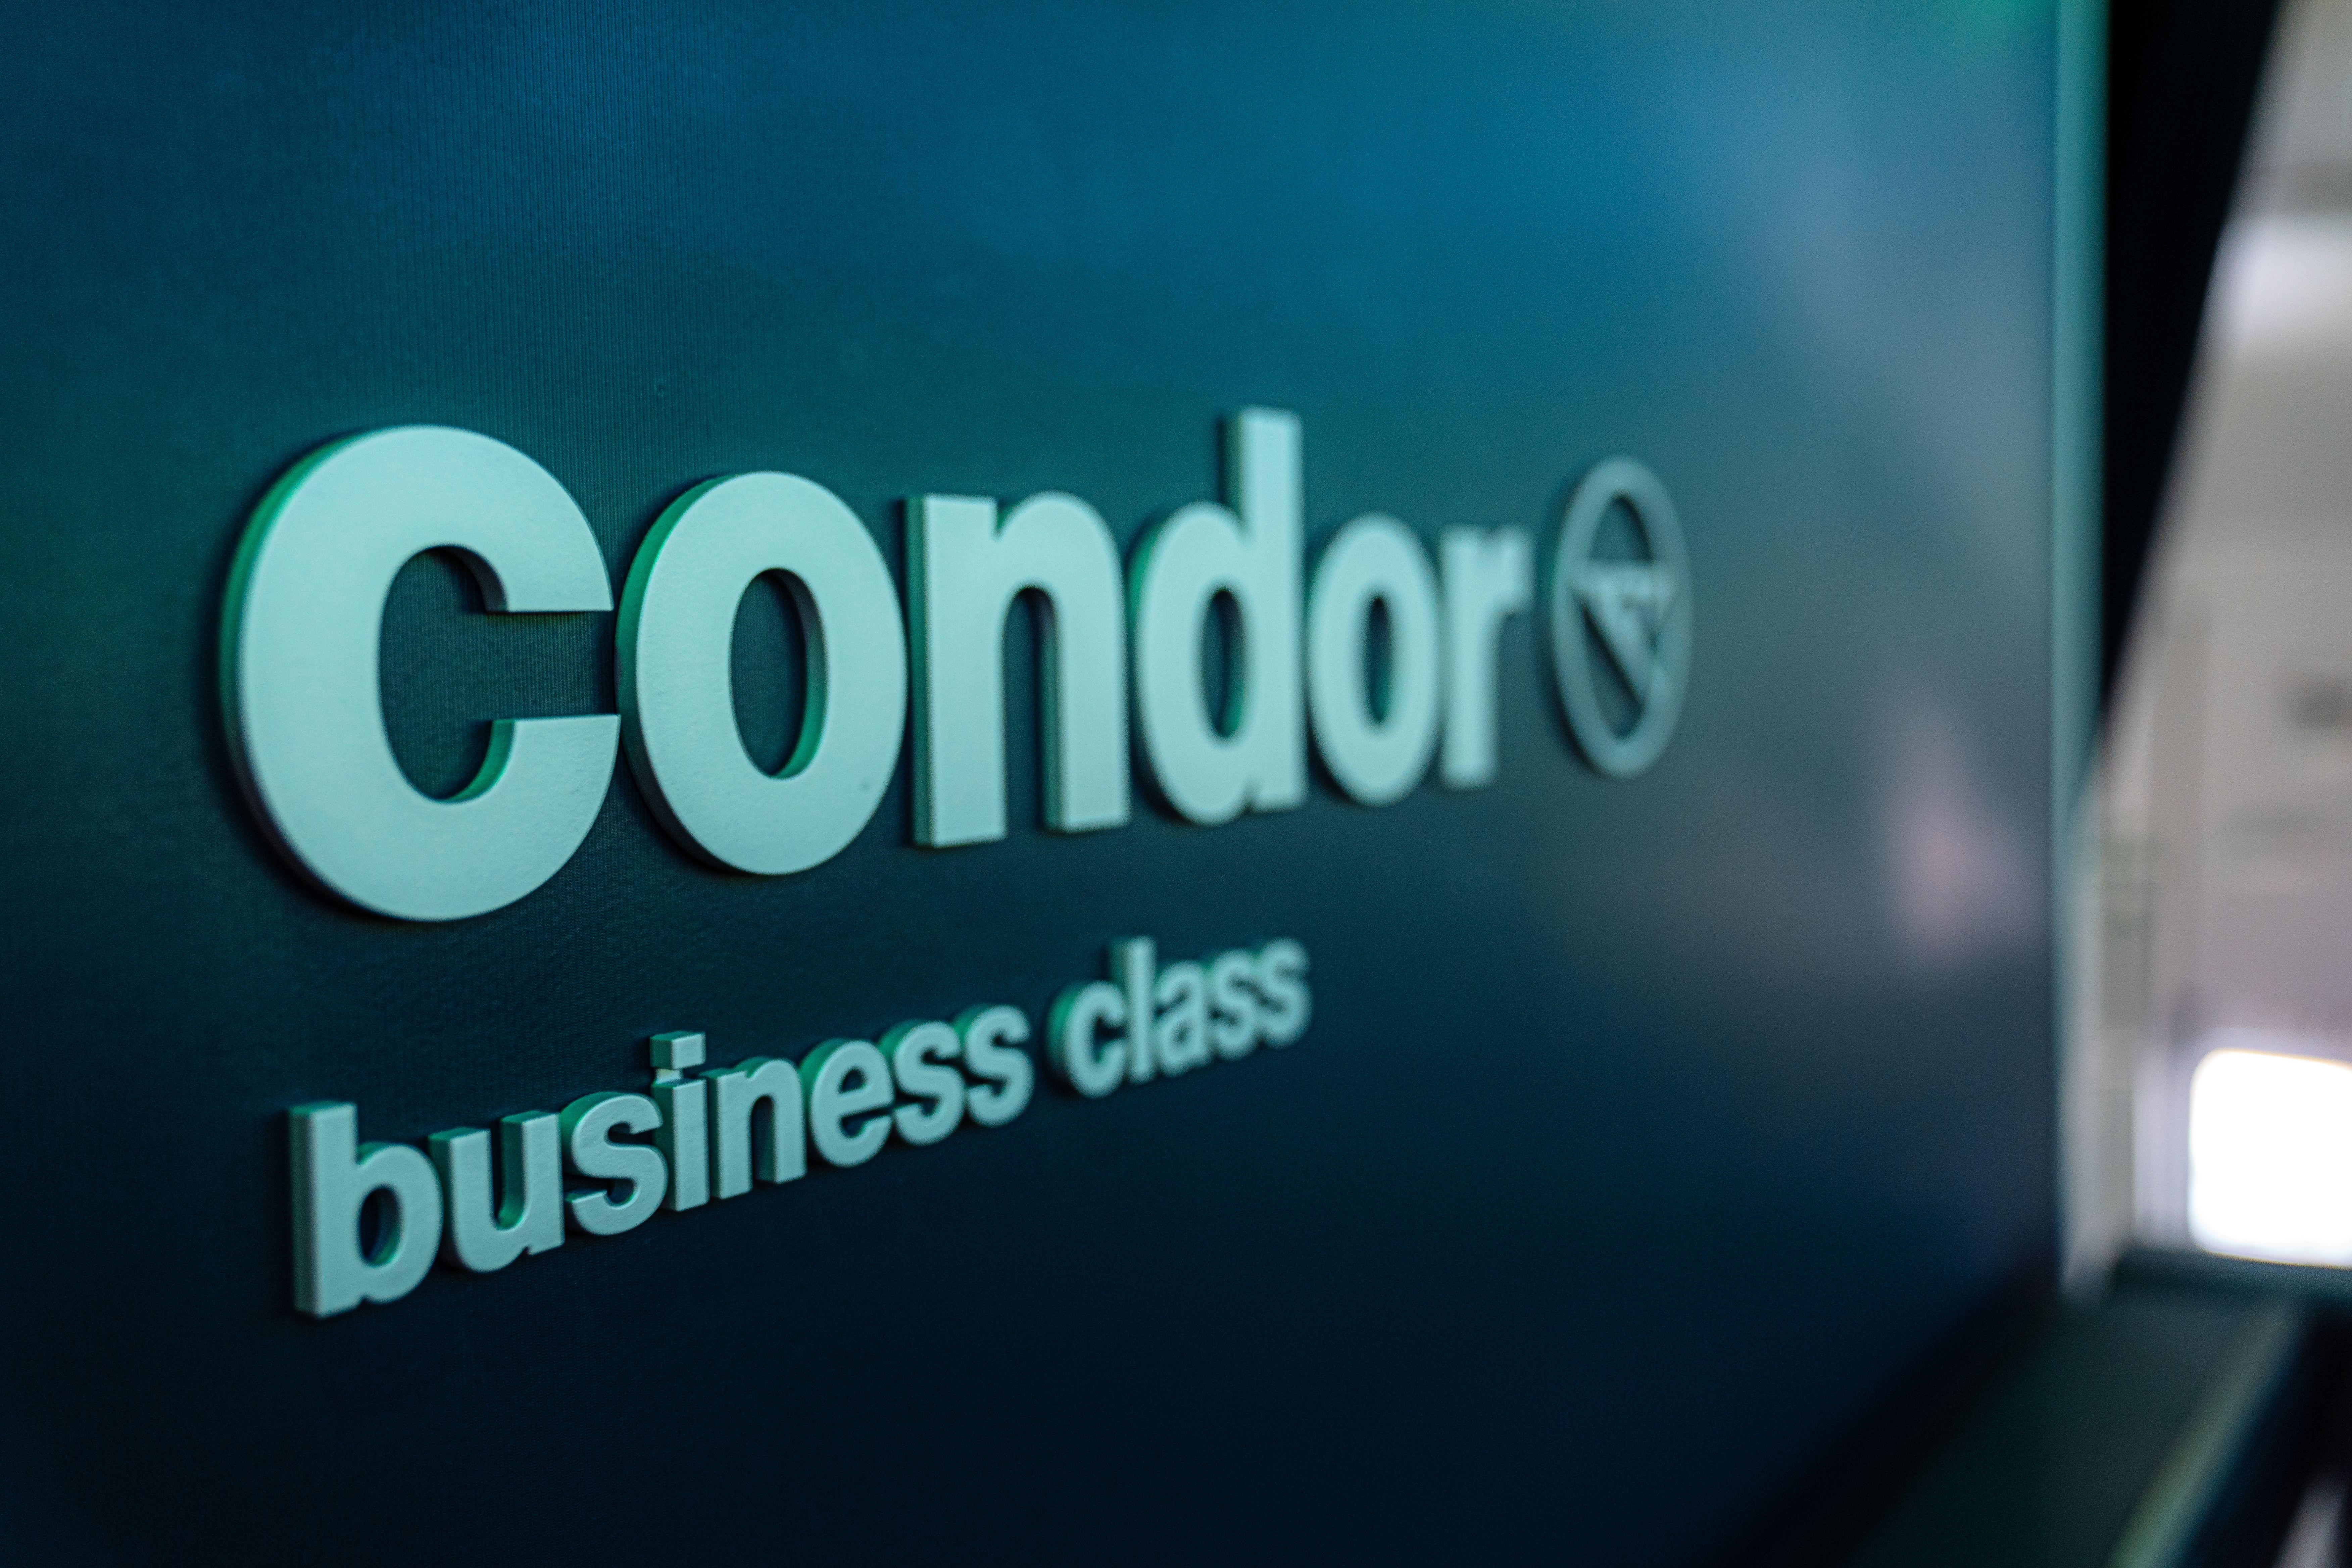 Condor business class